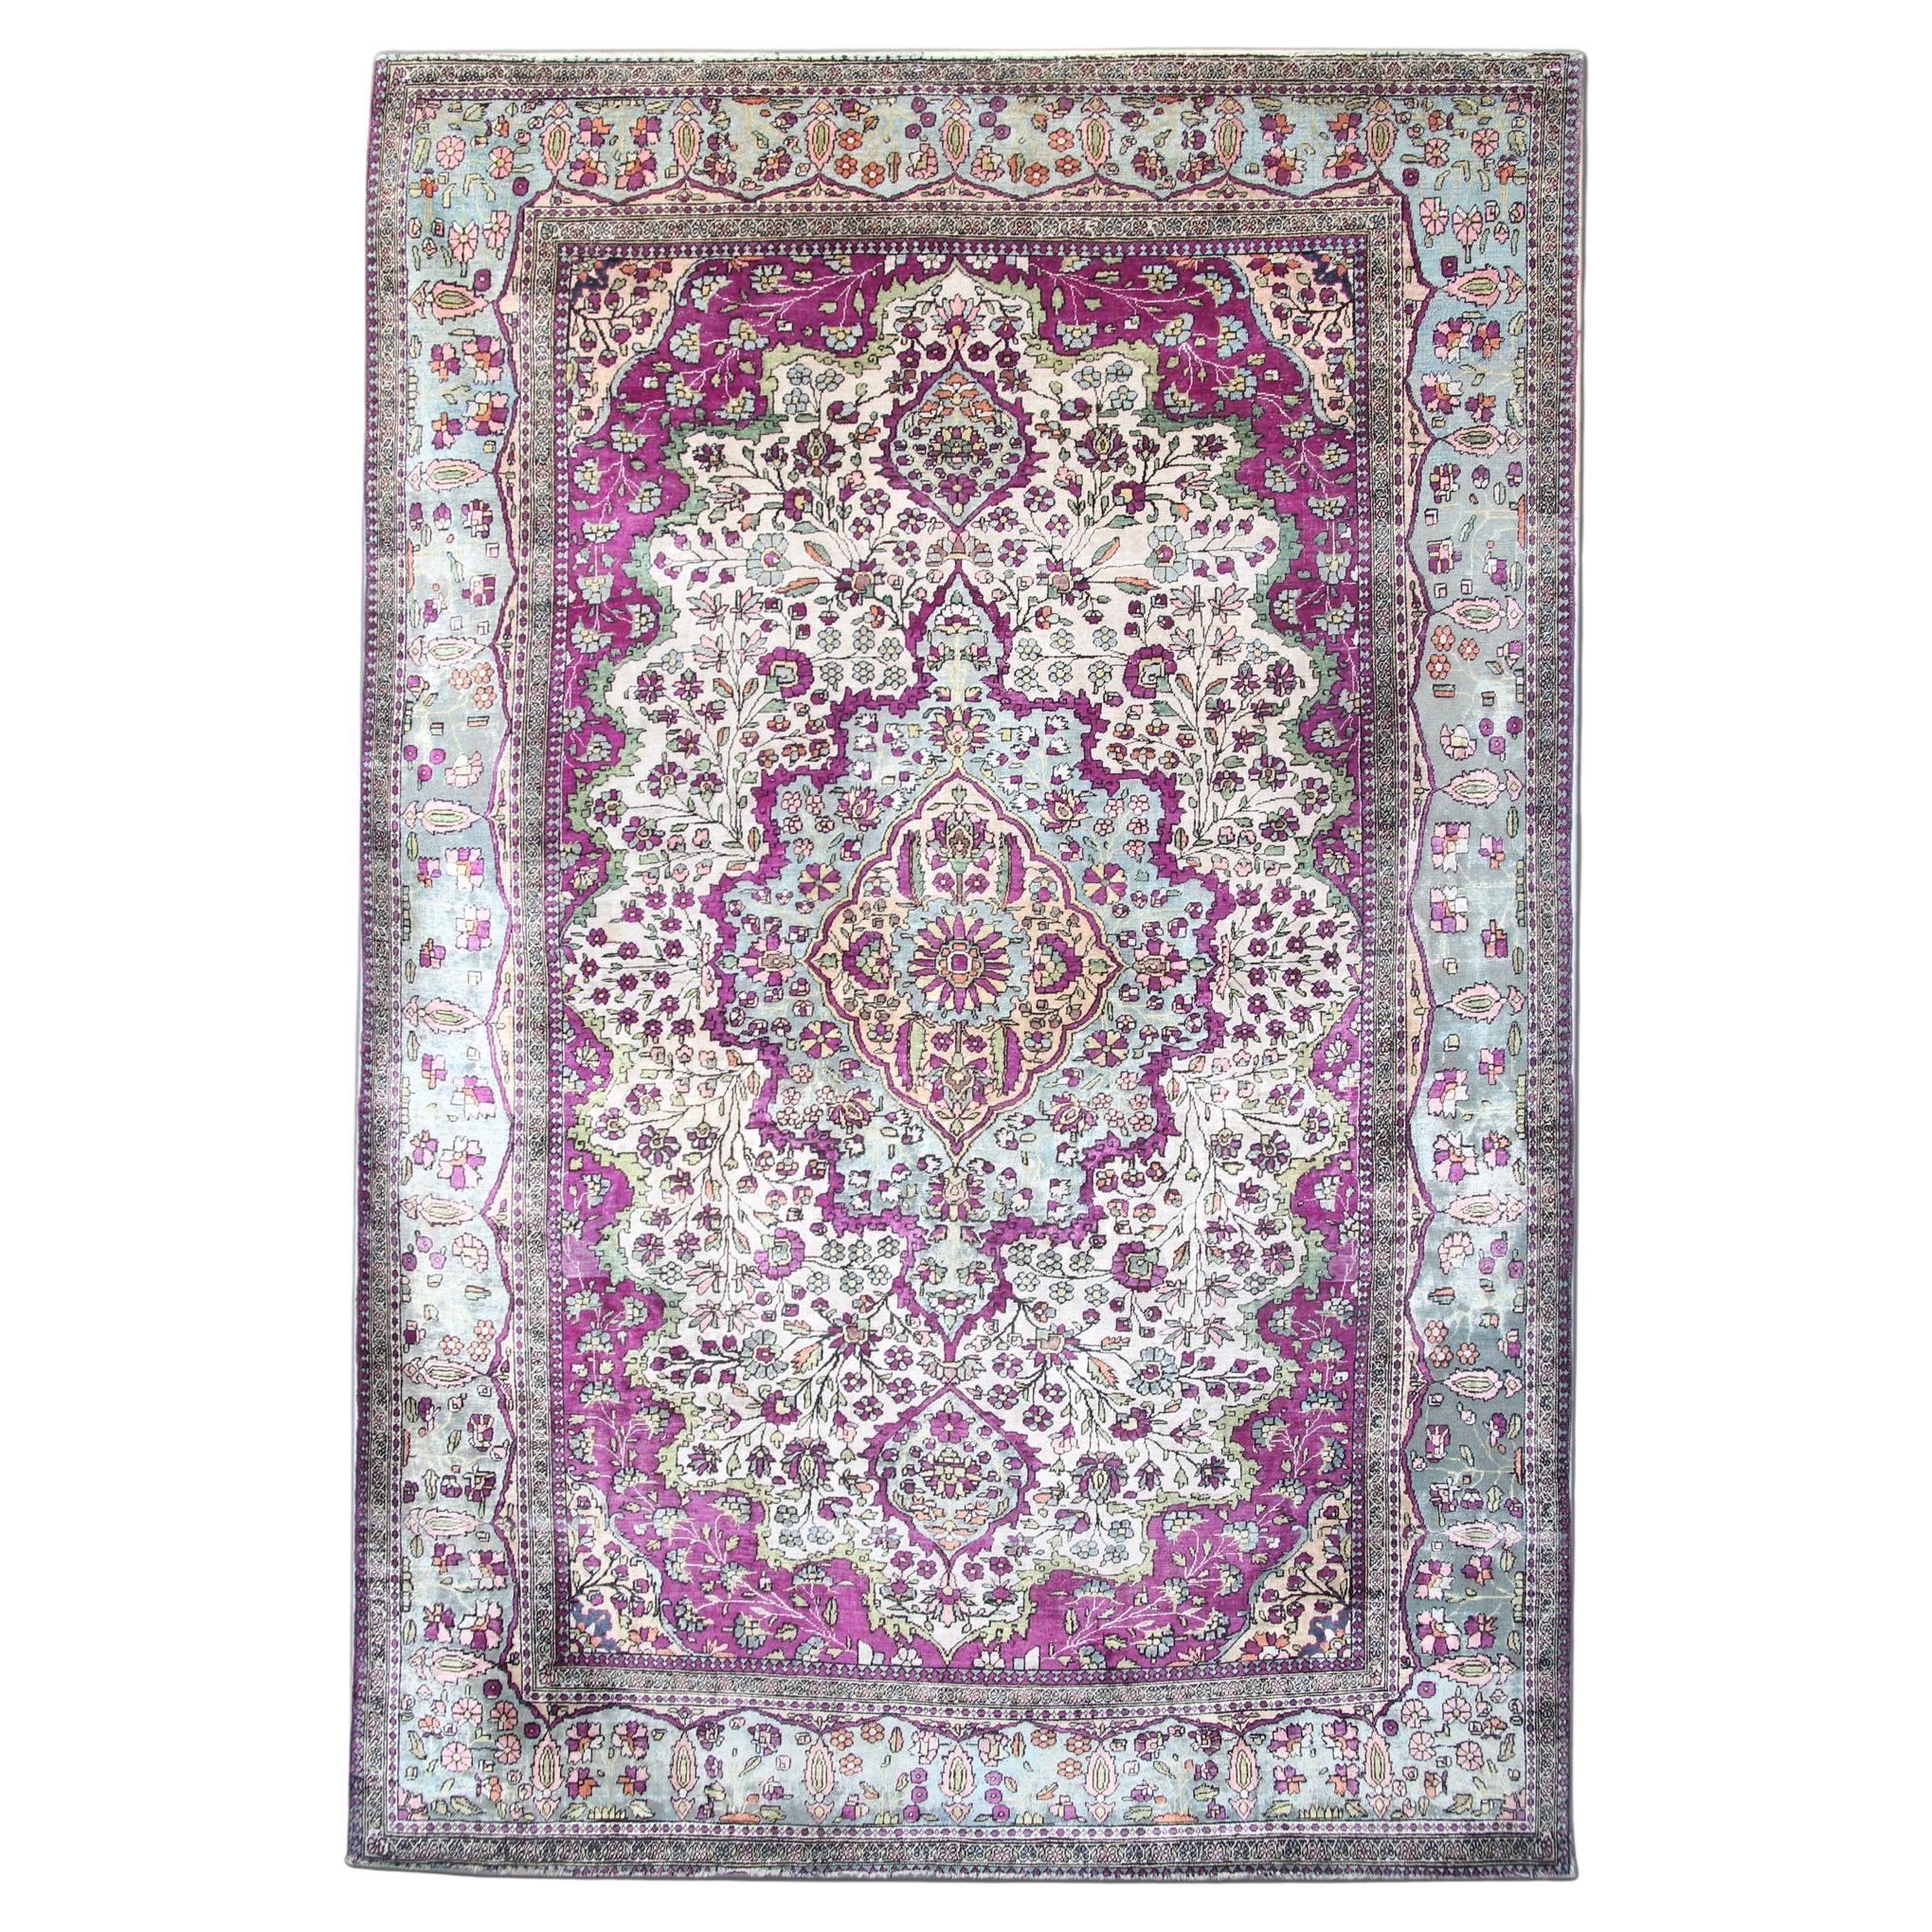 Antique Purple Cream Silk Rug Handwoven Mohtasham Living Room Carpet For Sale